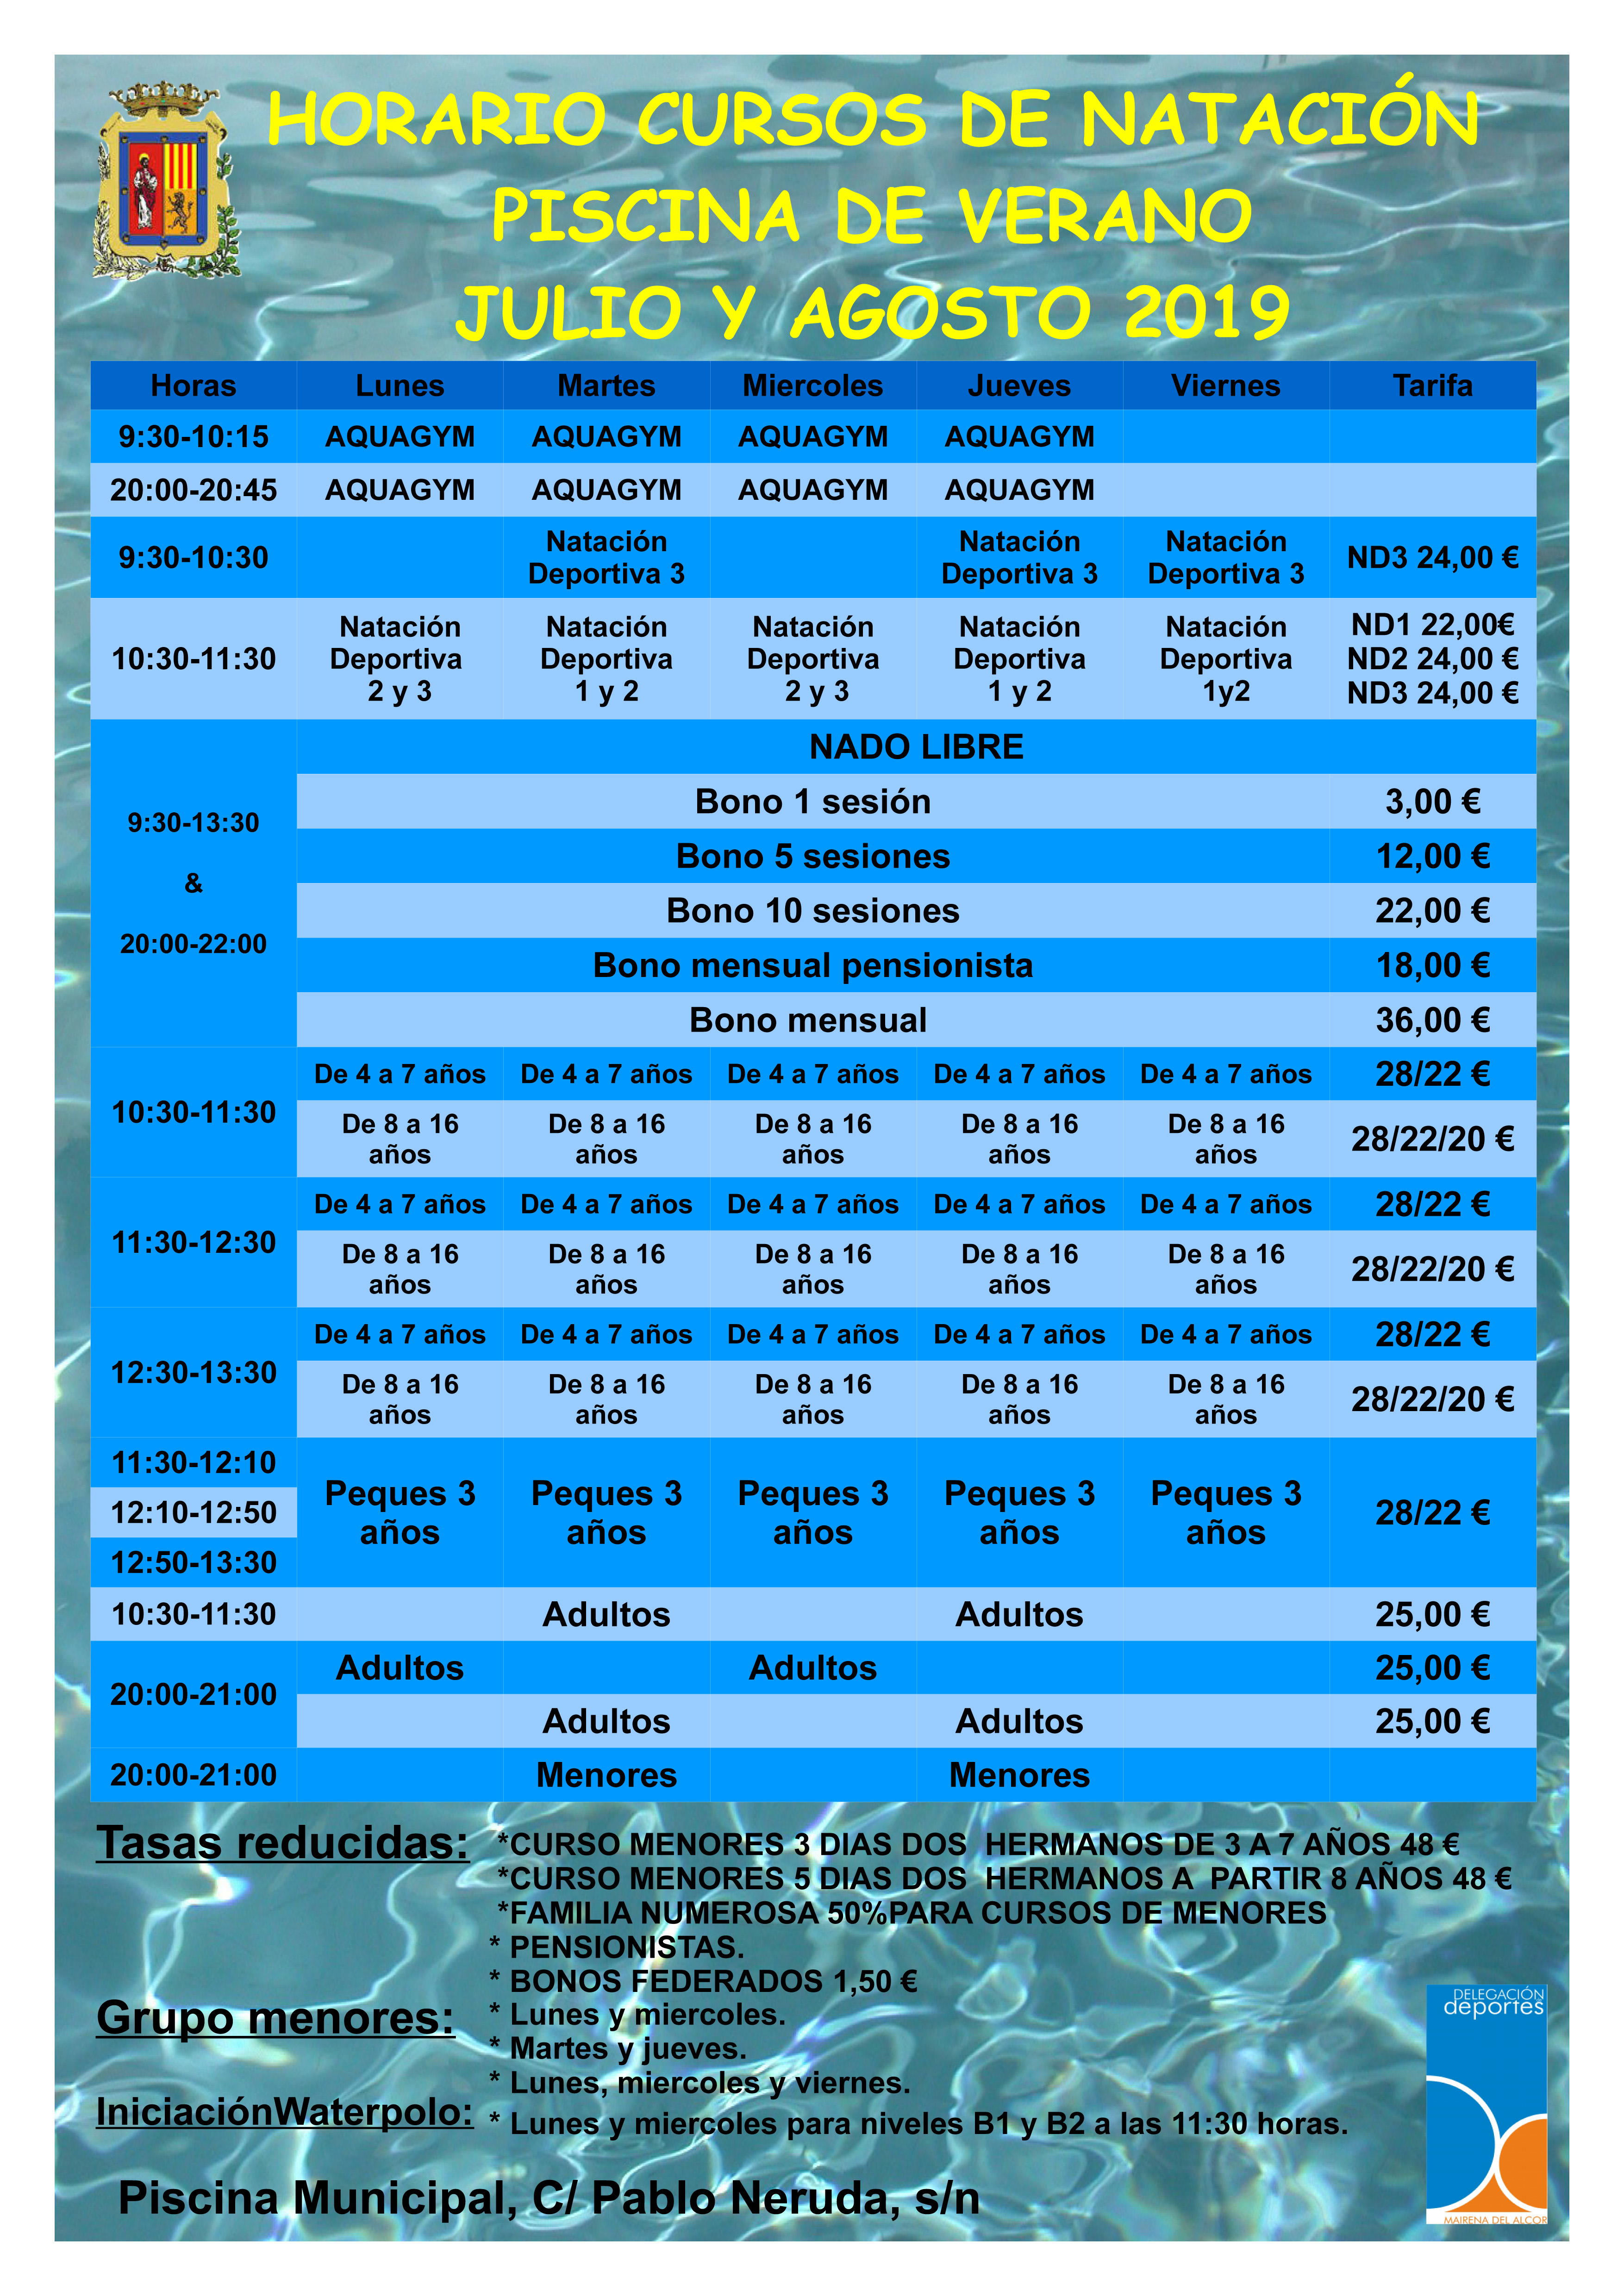 Horarios cursos de natación 2019WEBFINAL